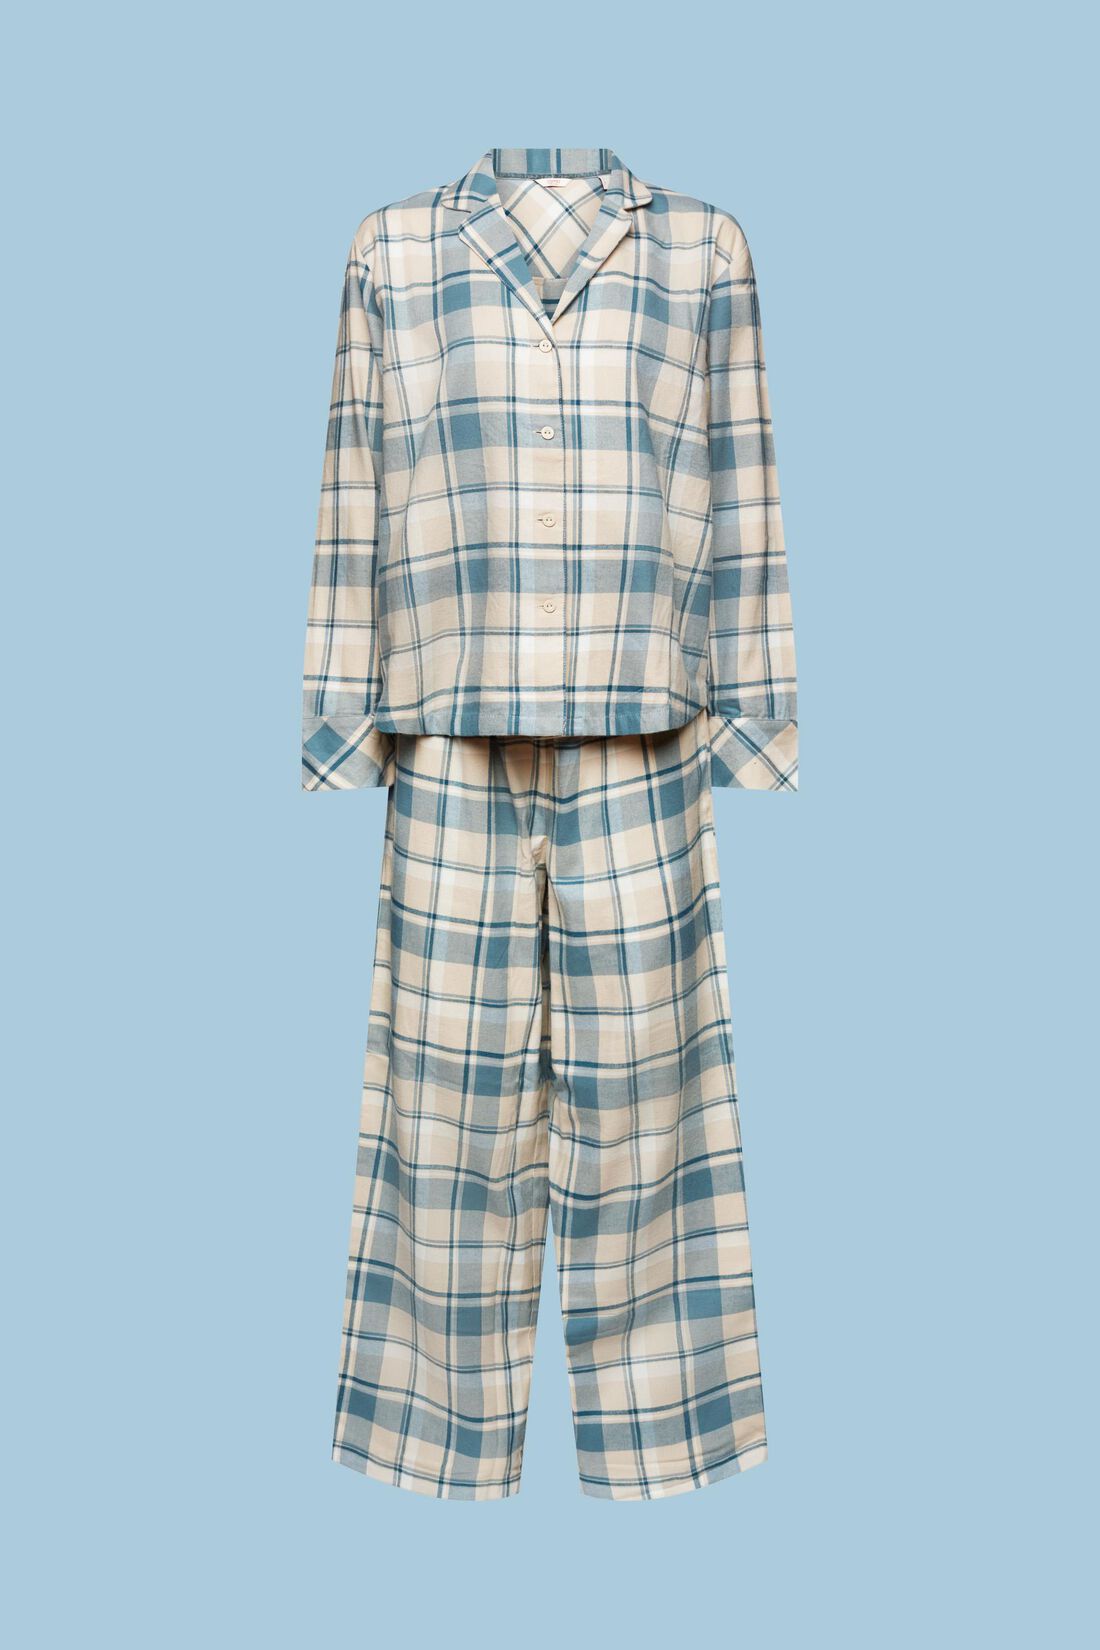 Esprit flannelen Pyjama doorknoop met kraag - 103ER1Y301 - Teal Blue